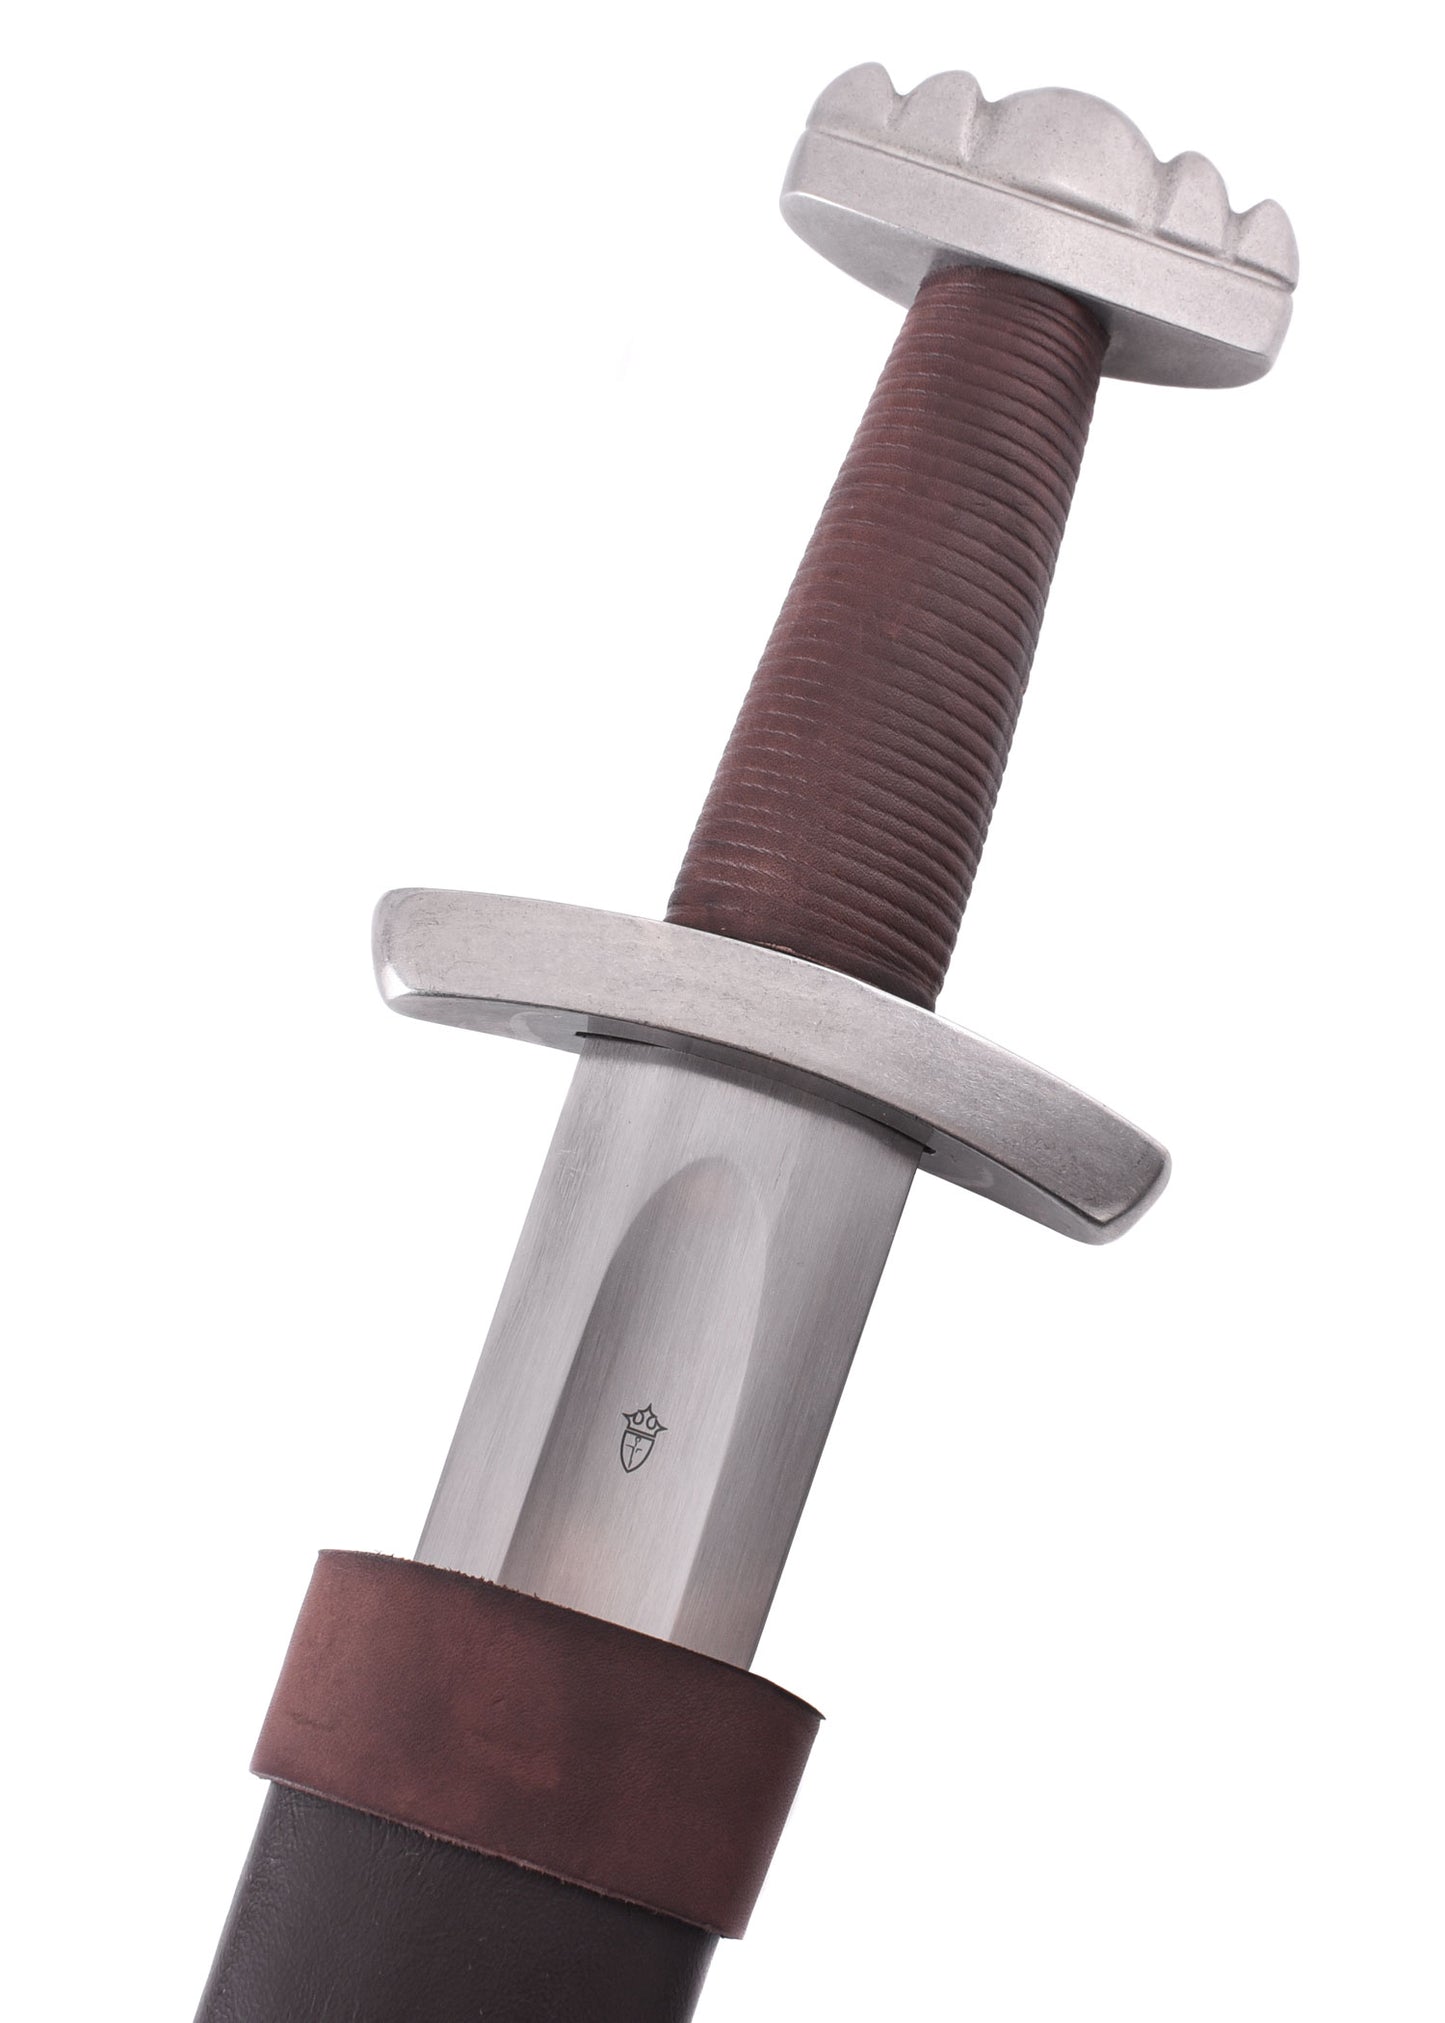 Épée viking de tournoi - Kingston Arms-T.A DEFENSE